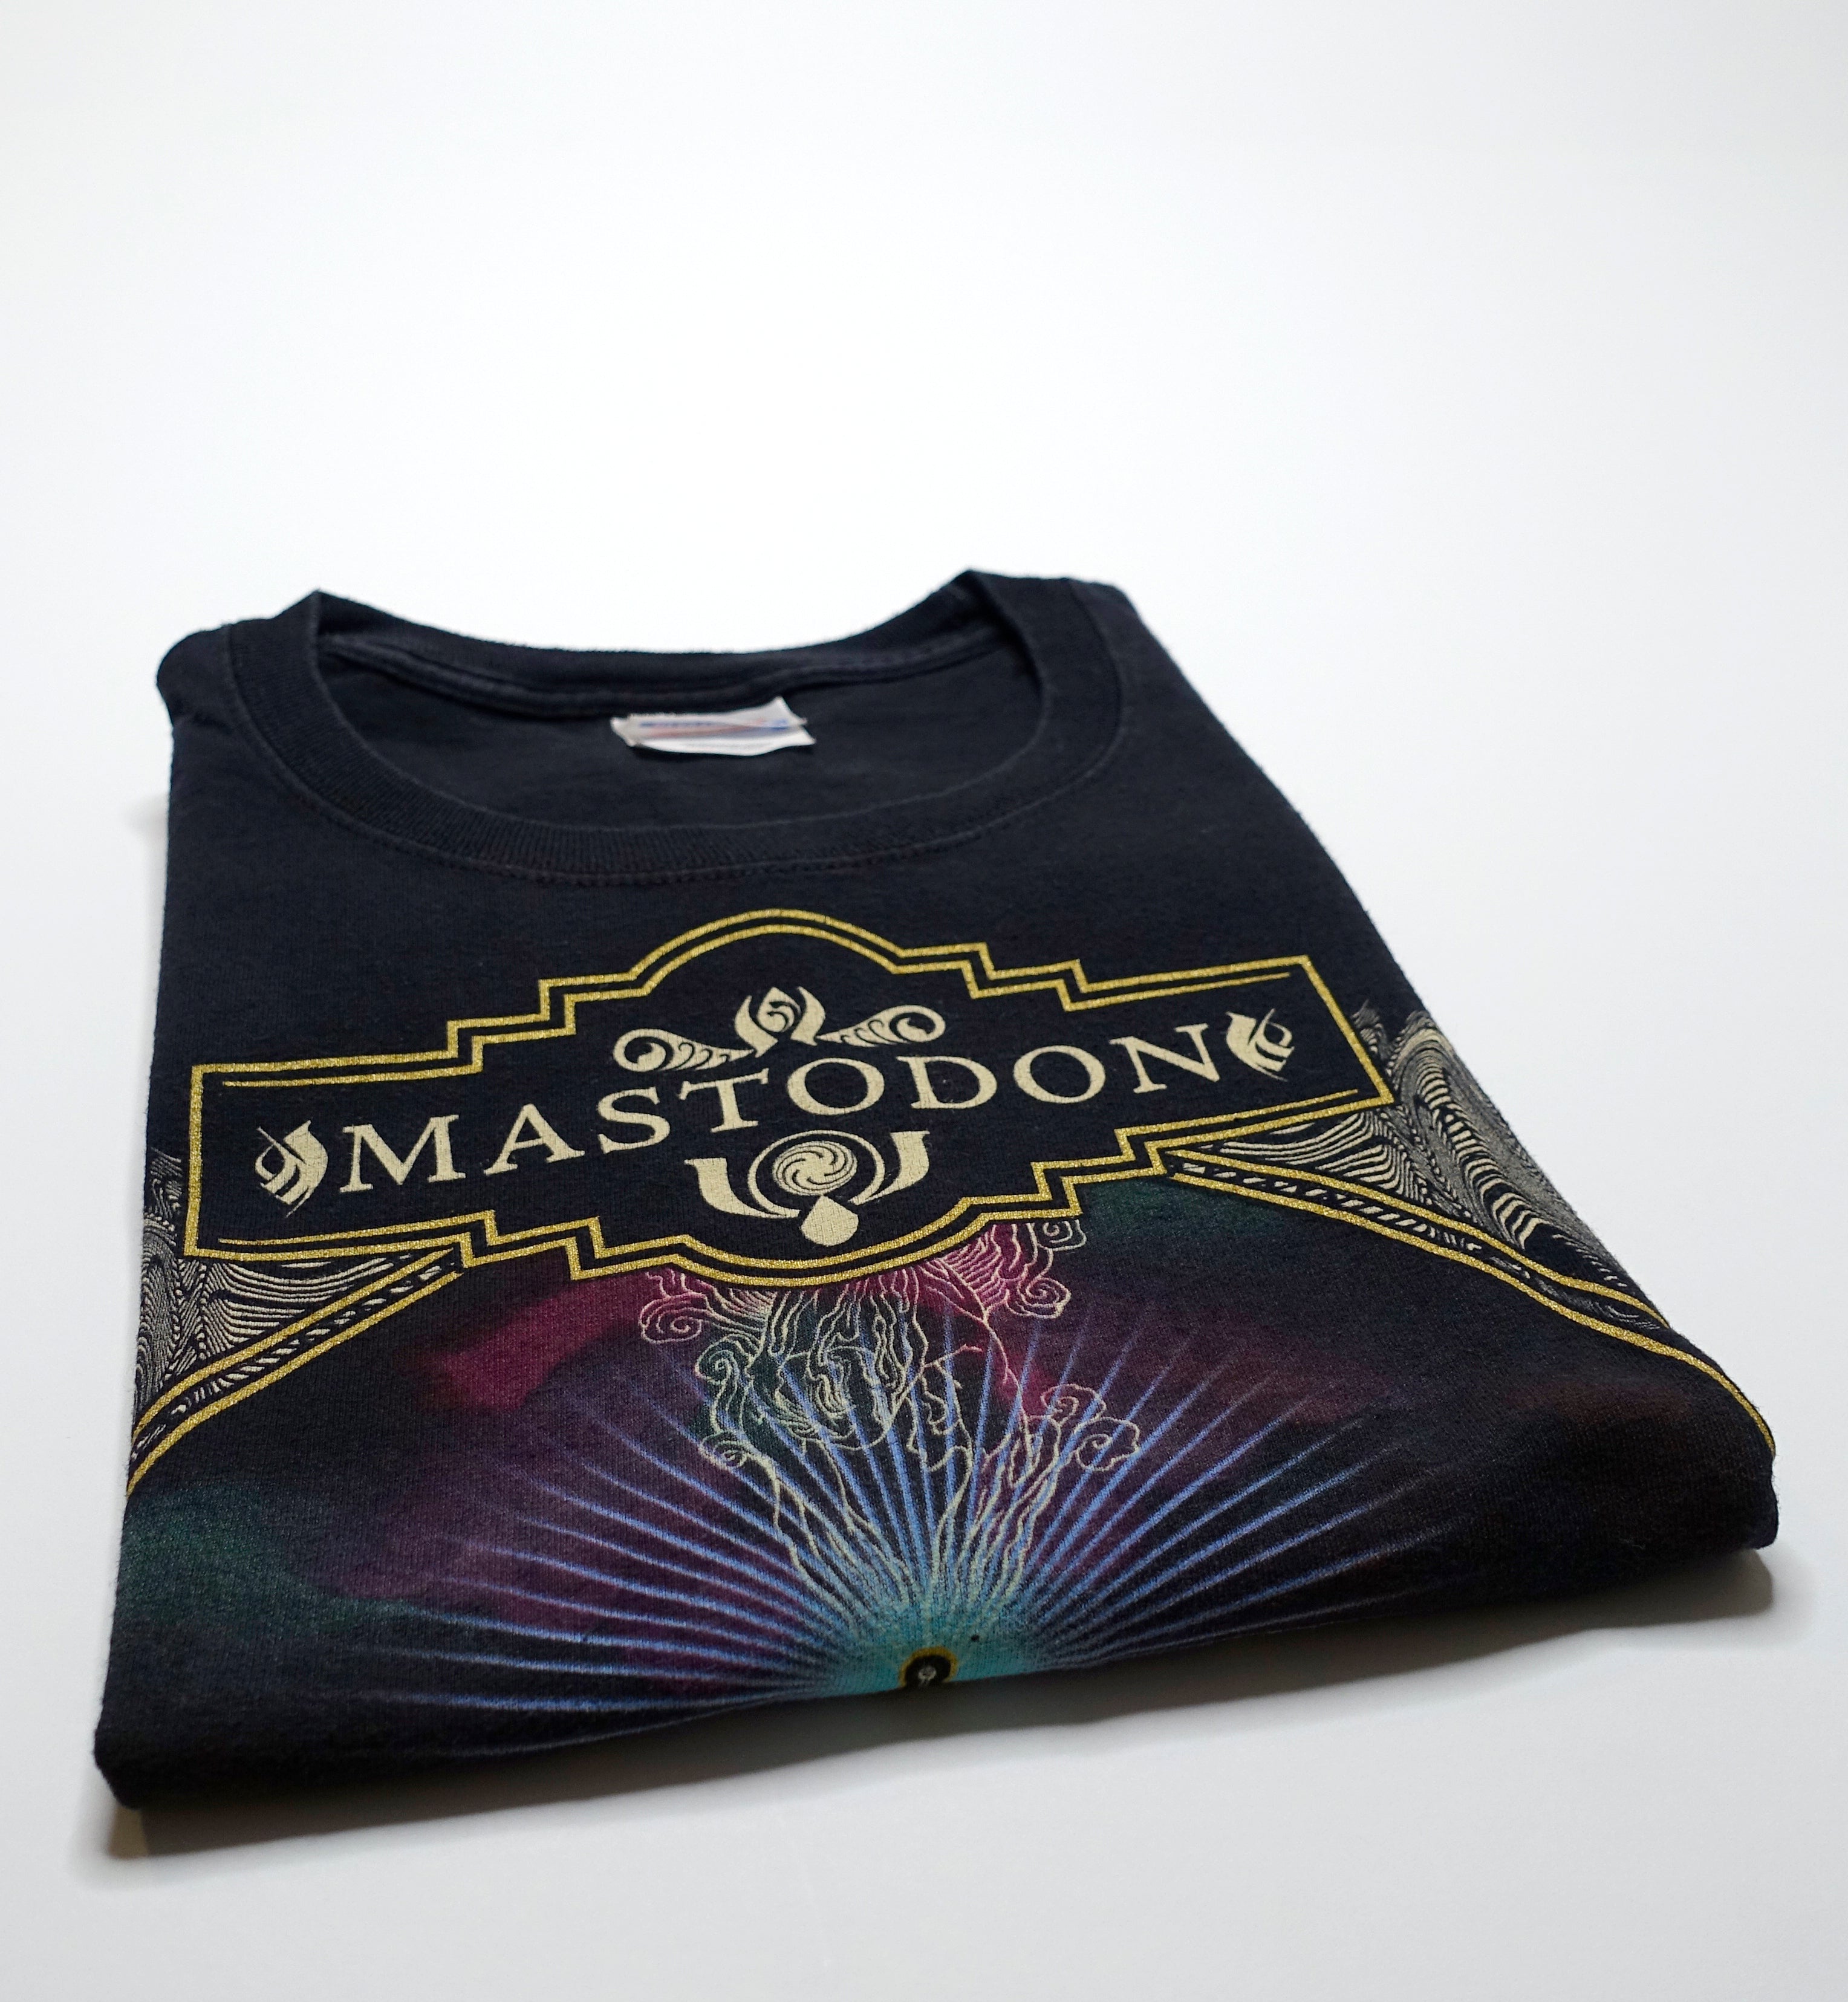 Mastodon - Crack The Skye 2008 Tour Shirt Size Large